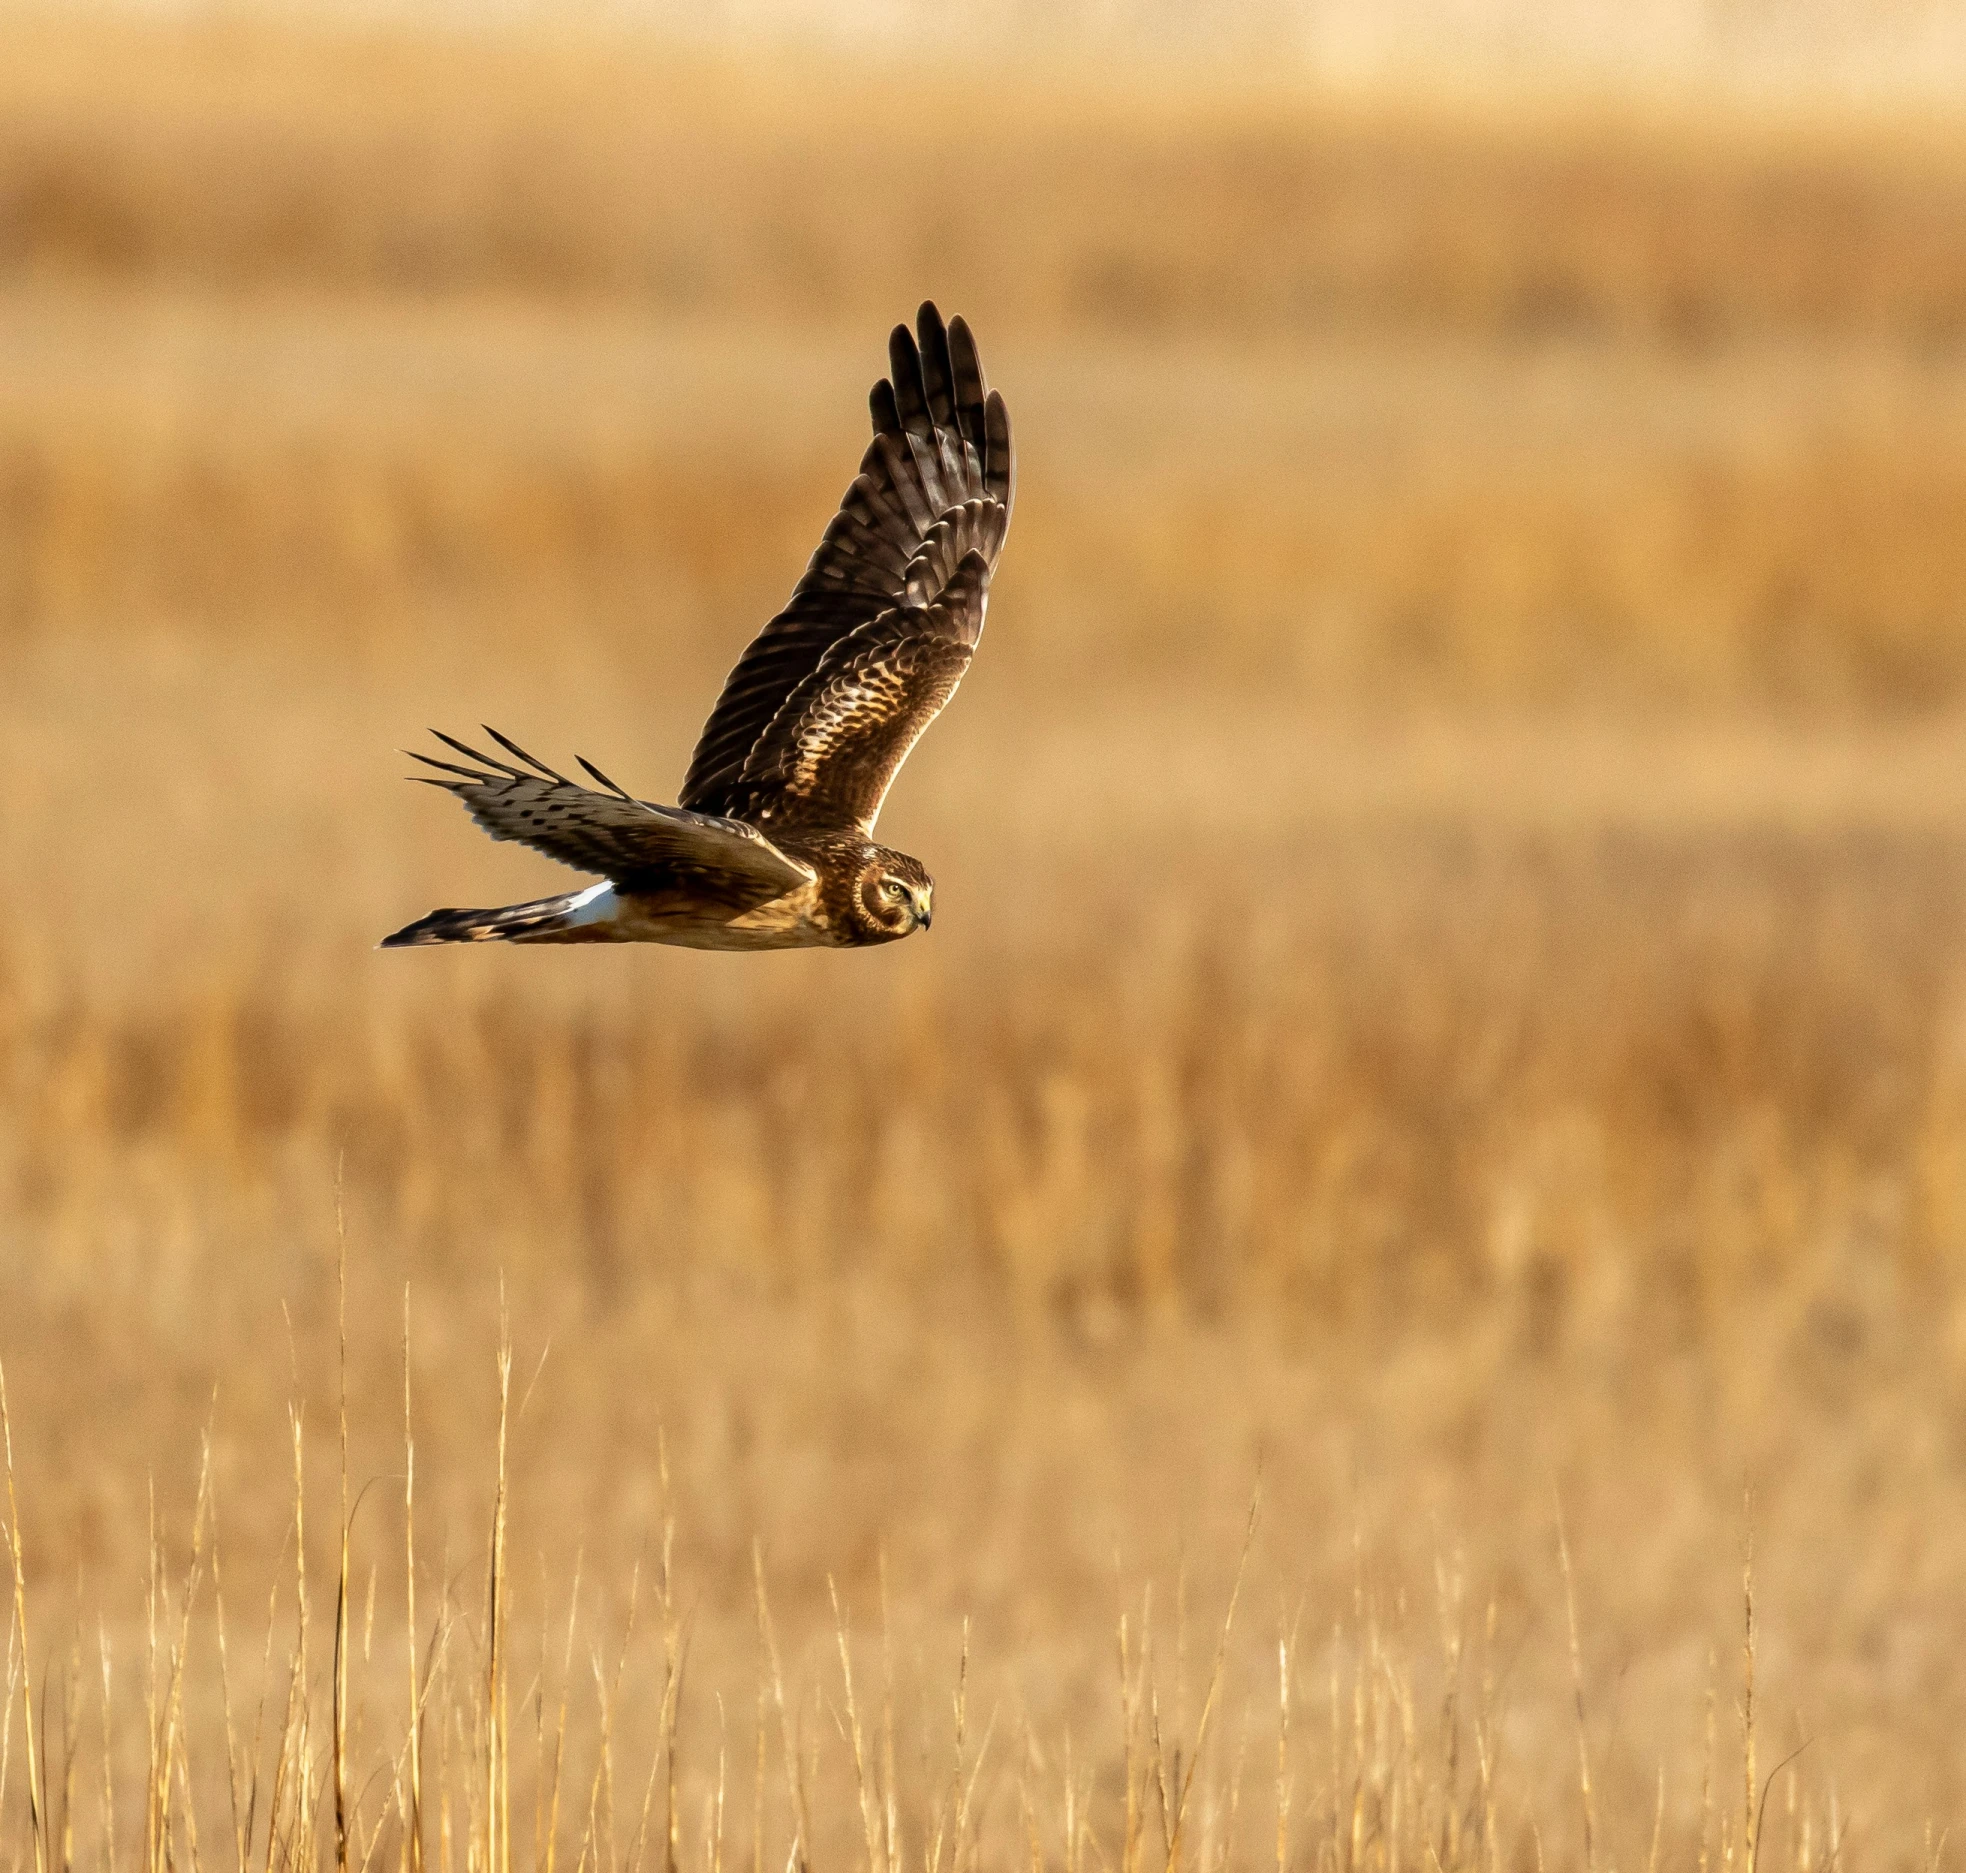 a bird in flight above a dry grass field